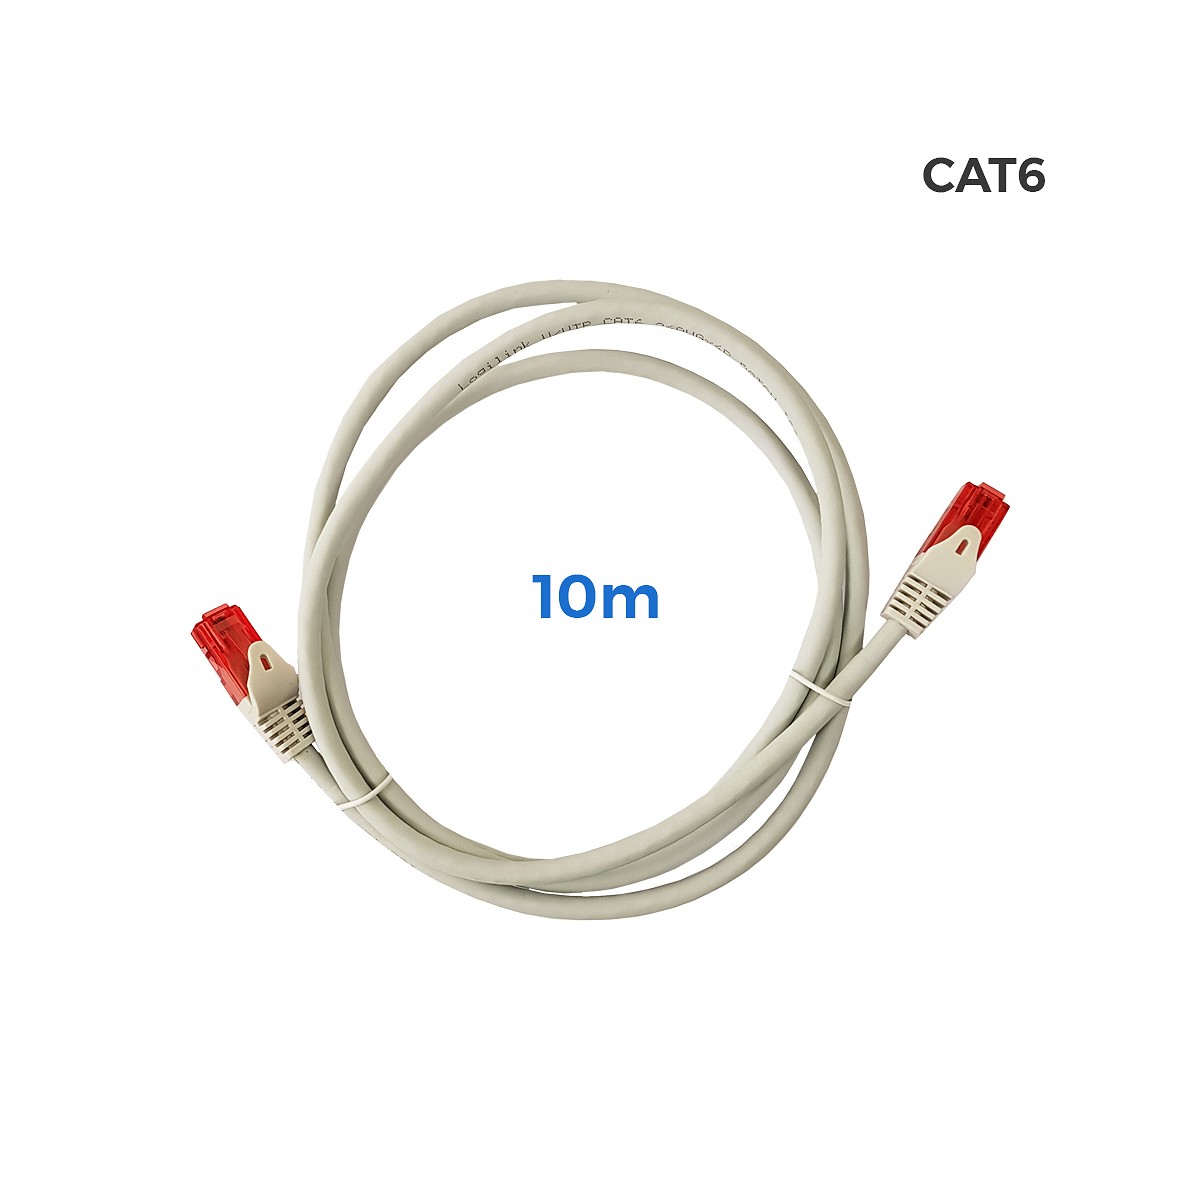 Cable utp cat.6 latiguillo rj45 cobre lszh gris 10m